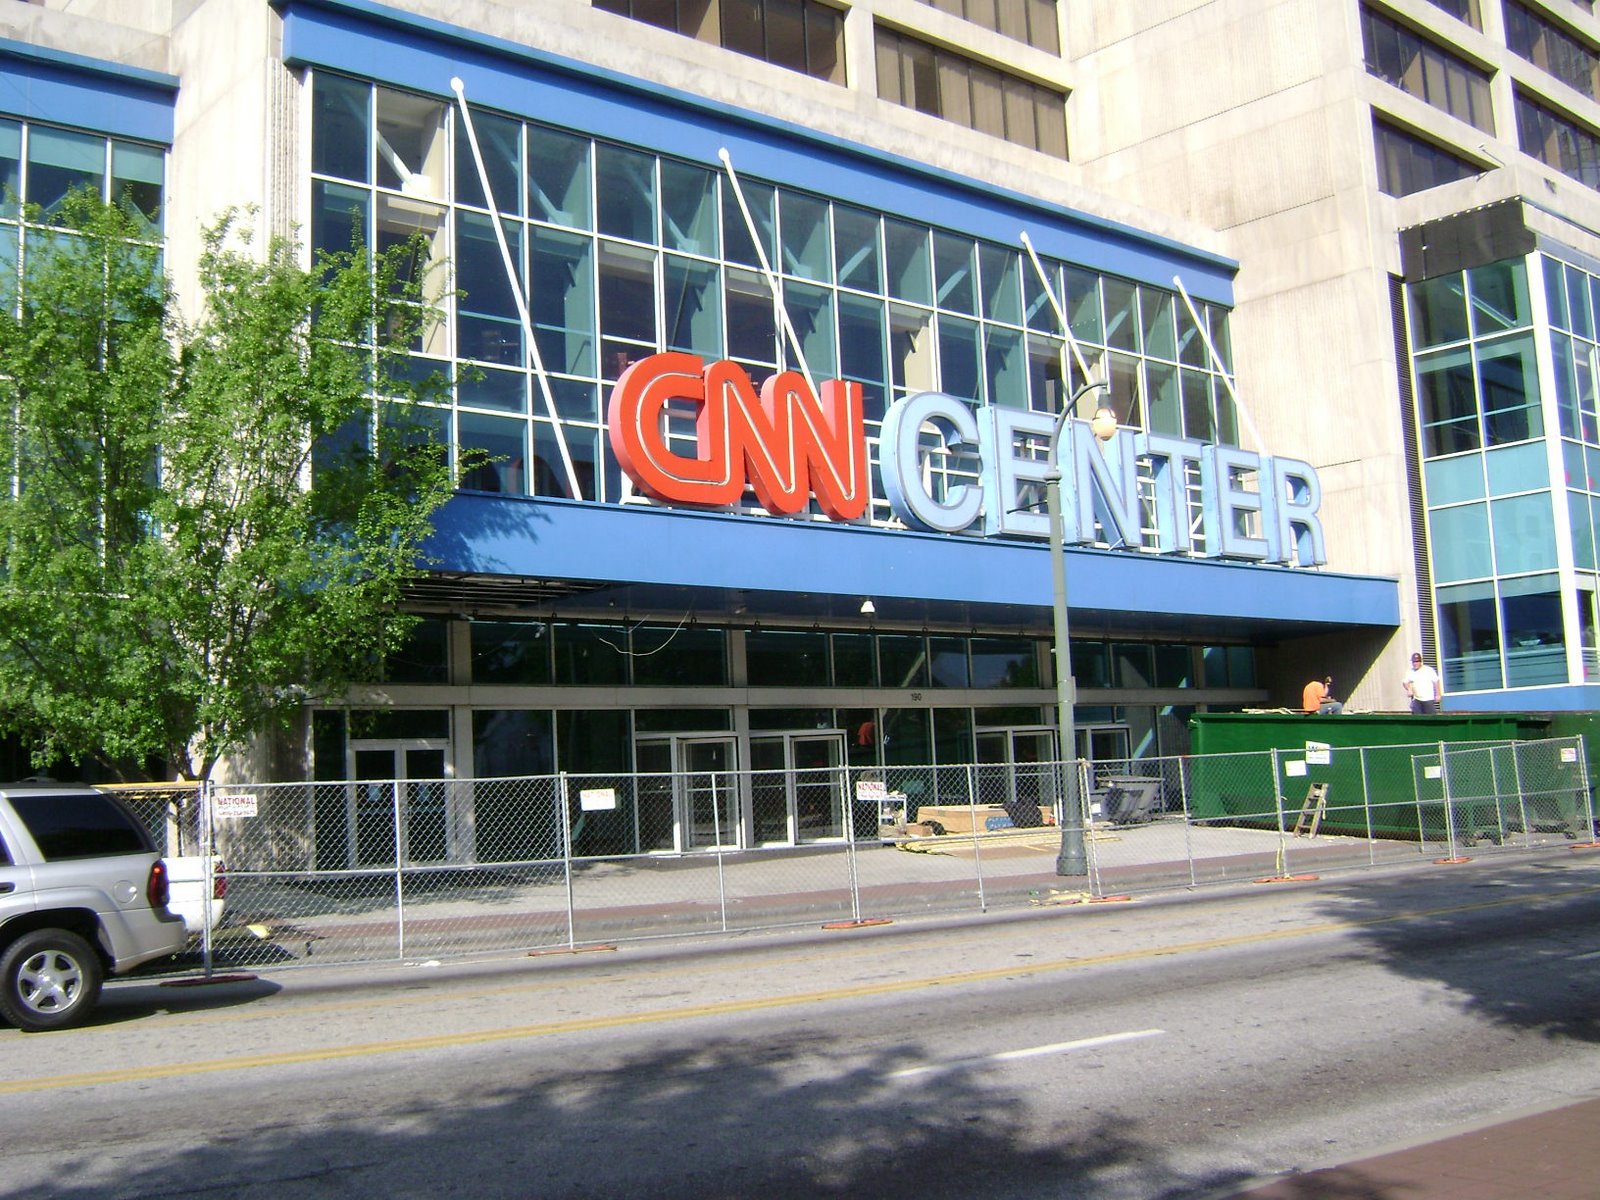 [CNN+Center.JPG]